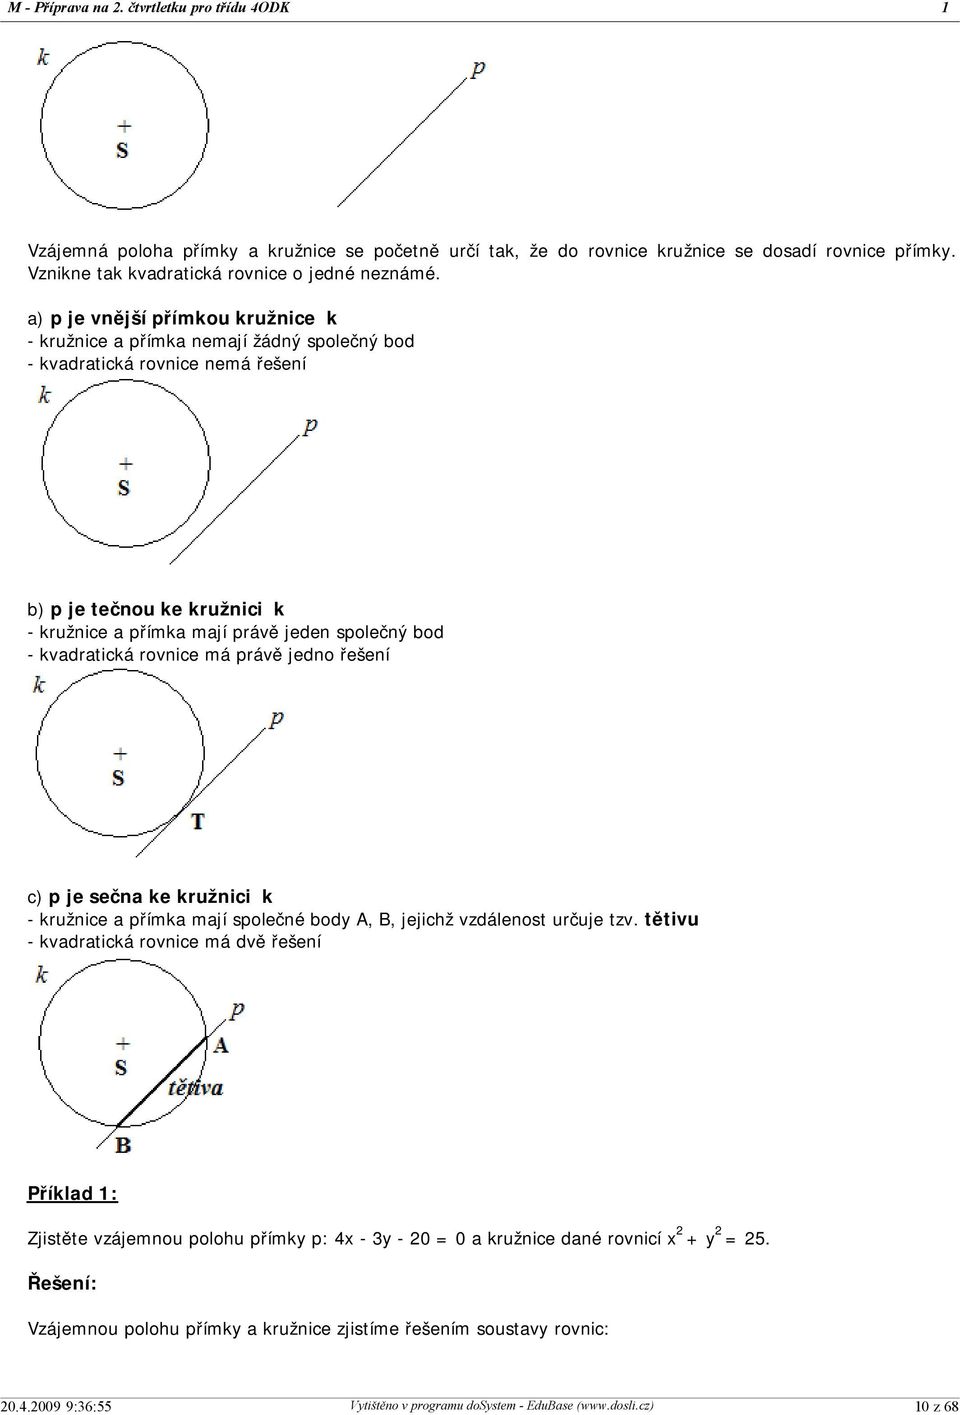 a) p je vnější přímkou kružnice k - kružnice a přímka nemají žádný společný bod - kvadratická rovnice nemá řešení b) p je tečnou ke kružnici k - kružnice a přímka mají právě jeden společný